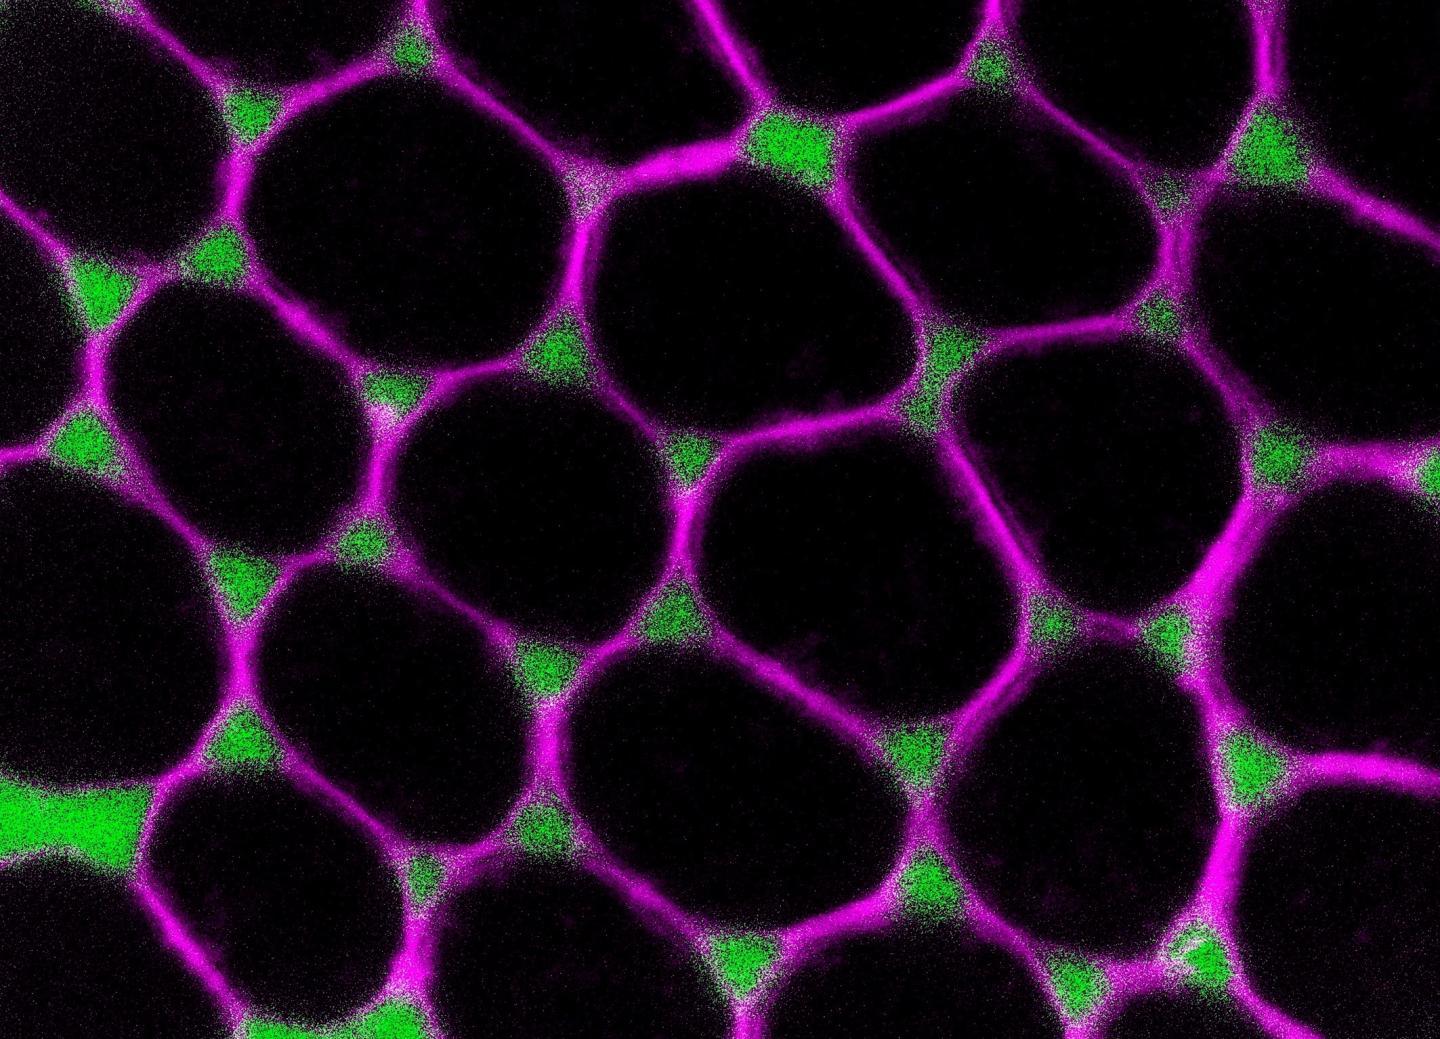 研究人员发现了果蝇卵发育过程中细胞接触如何动态重塑